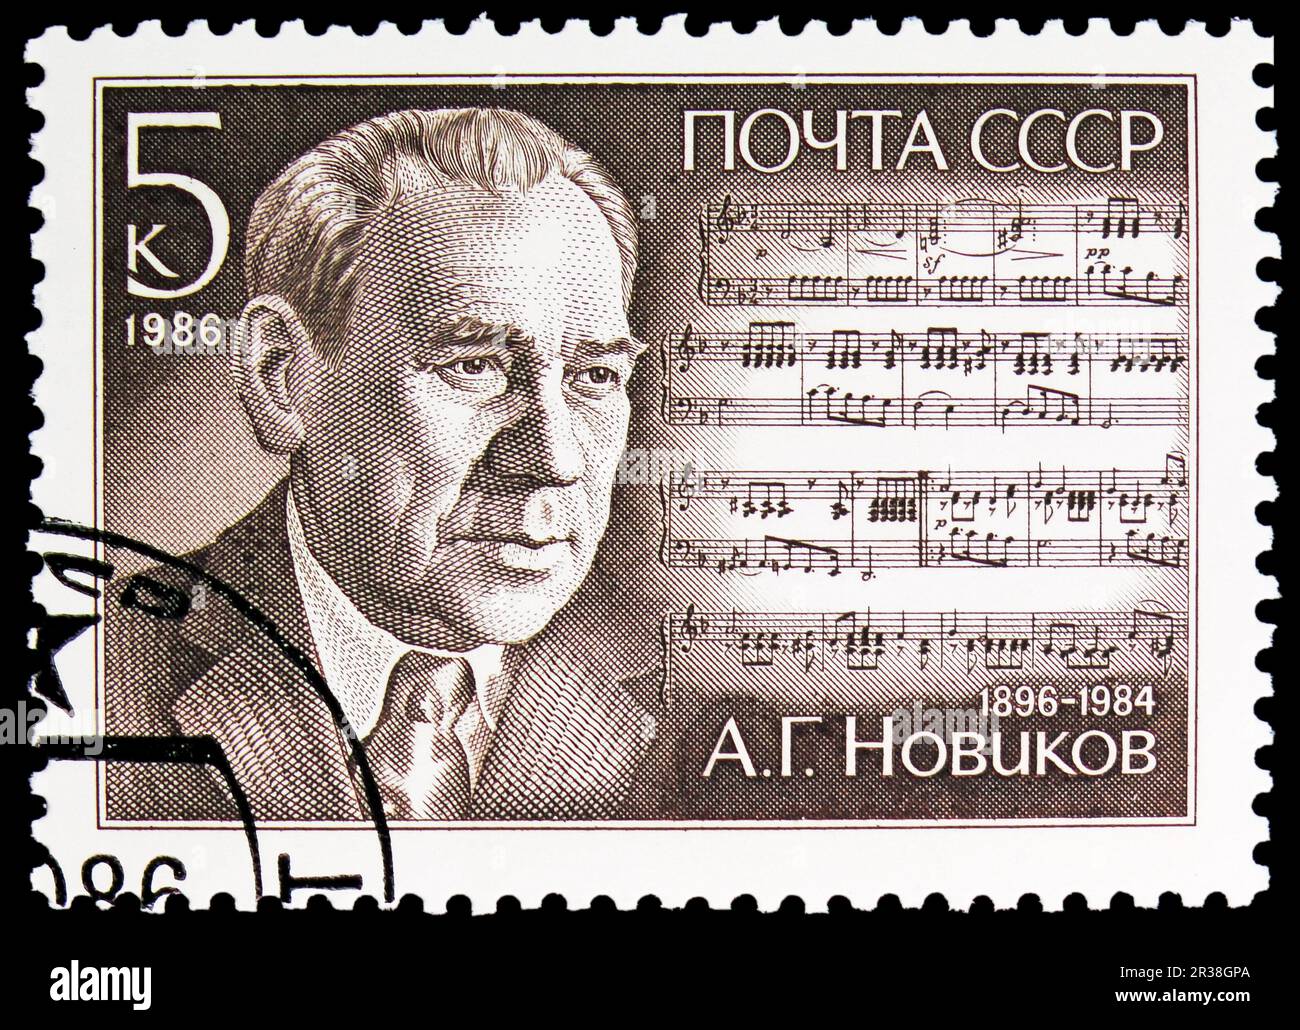 MOSCOU, RUSSIE - 18 MAI 2023 : le timbre-poste imprimé en URSS montre le 90th anniversaire de naissance de A.G. Novikov (1896-1984), série anniversaires de naissance, circ Banque D'Images